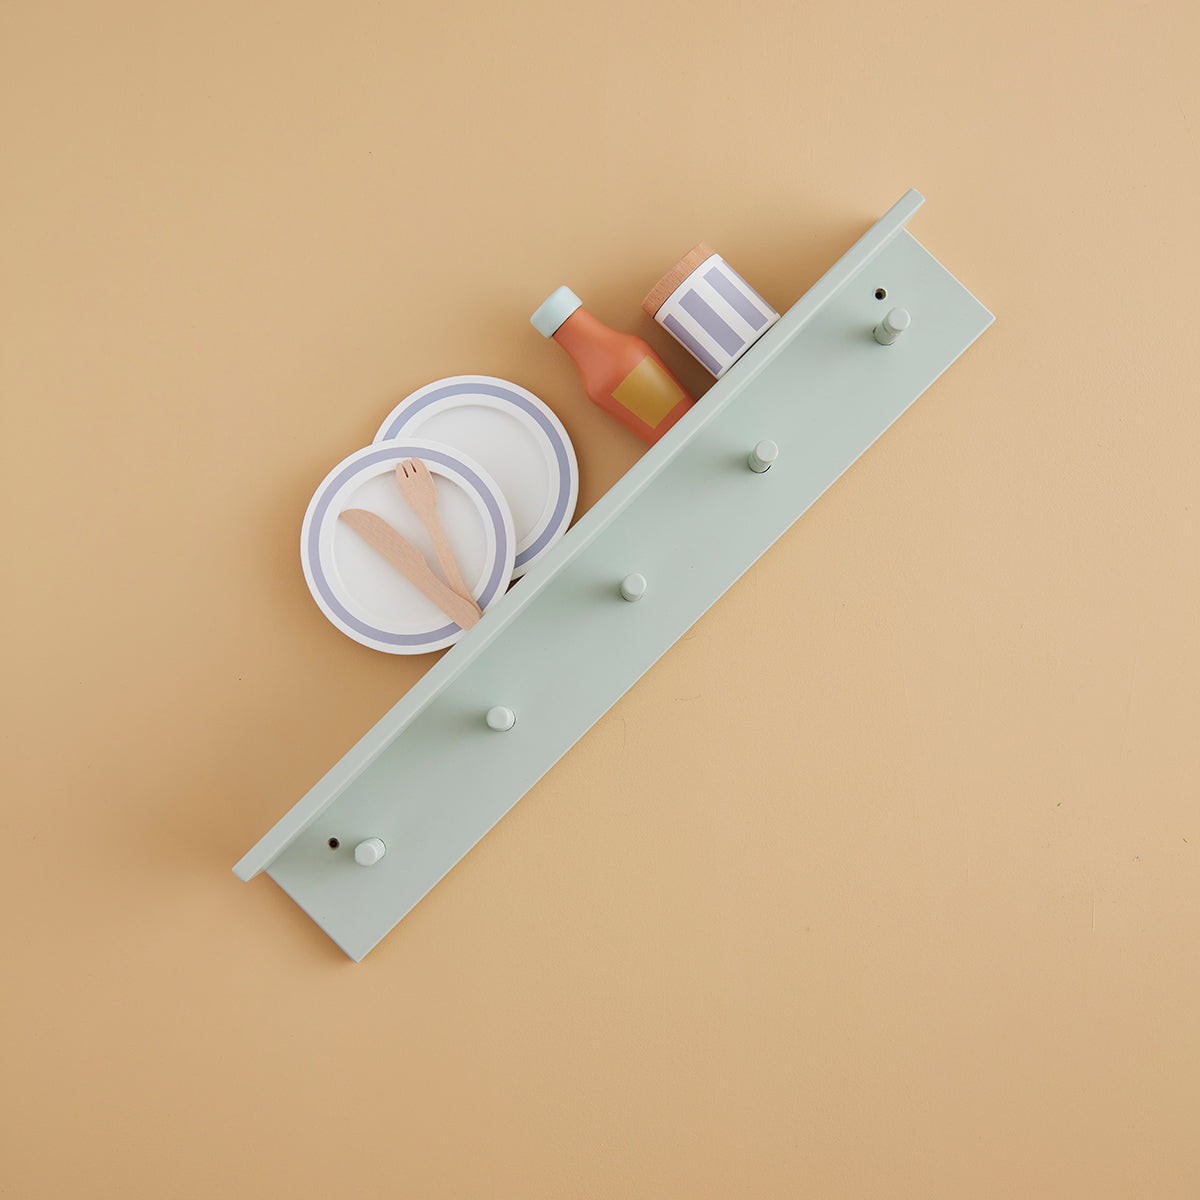 De Kid's Concept houten kapstok met plankje mintgroen is het perfecte accessoire voor op een kinderkamer. Deze leuke kapstok is namelijk een kapstok en wandplank in één. VanZus.